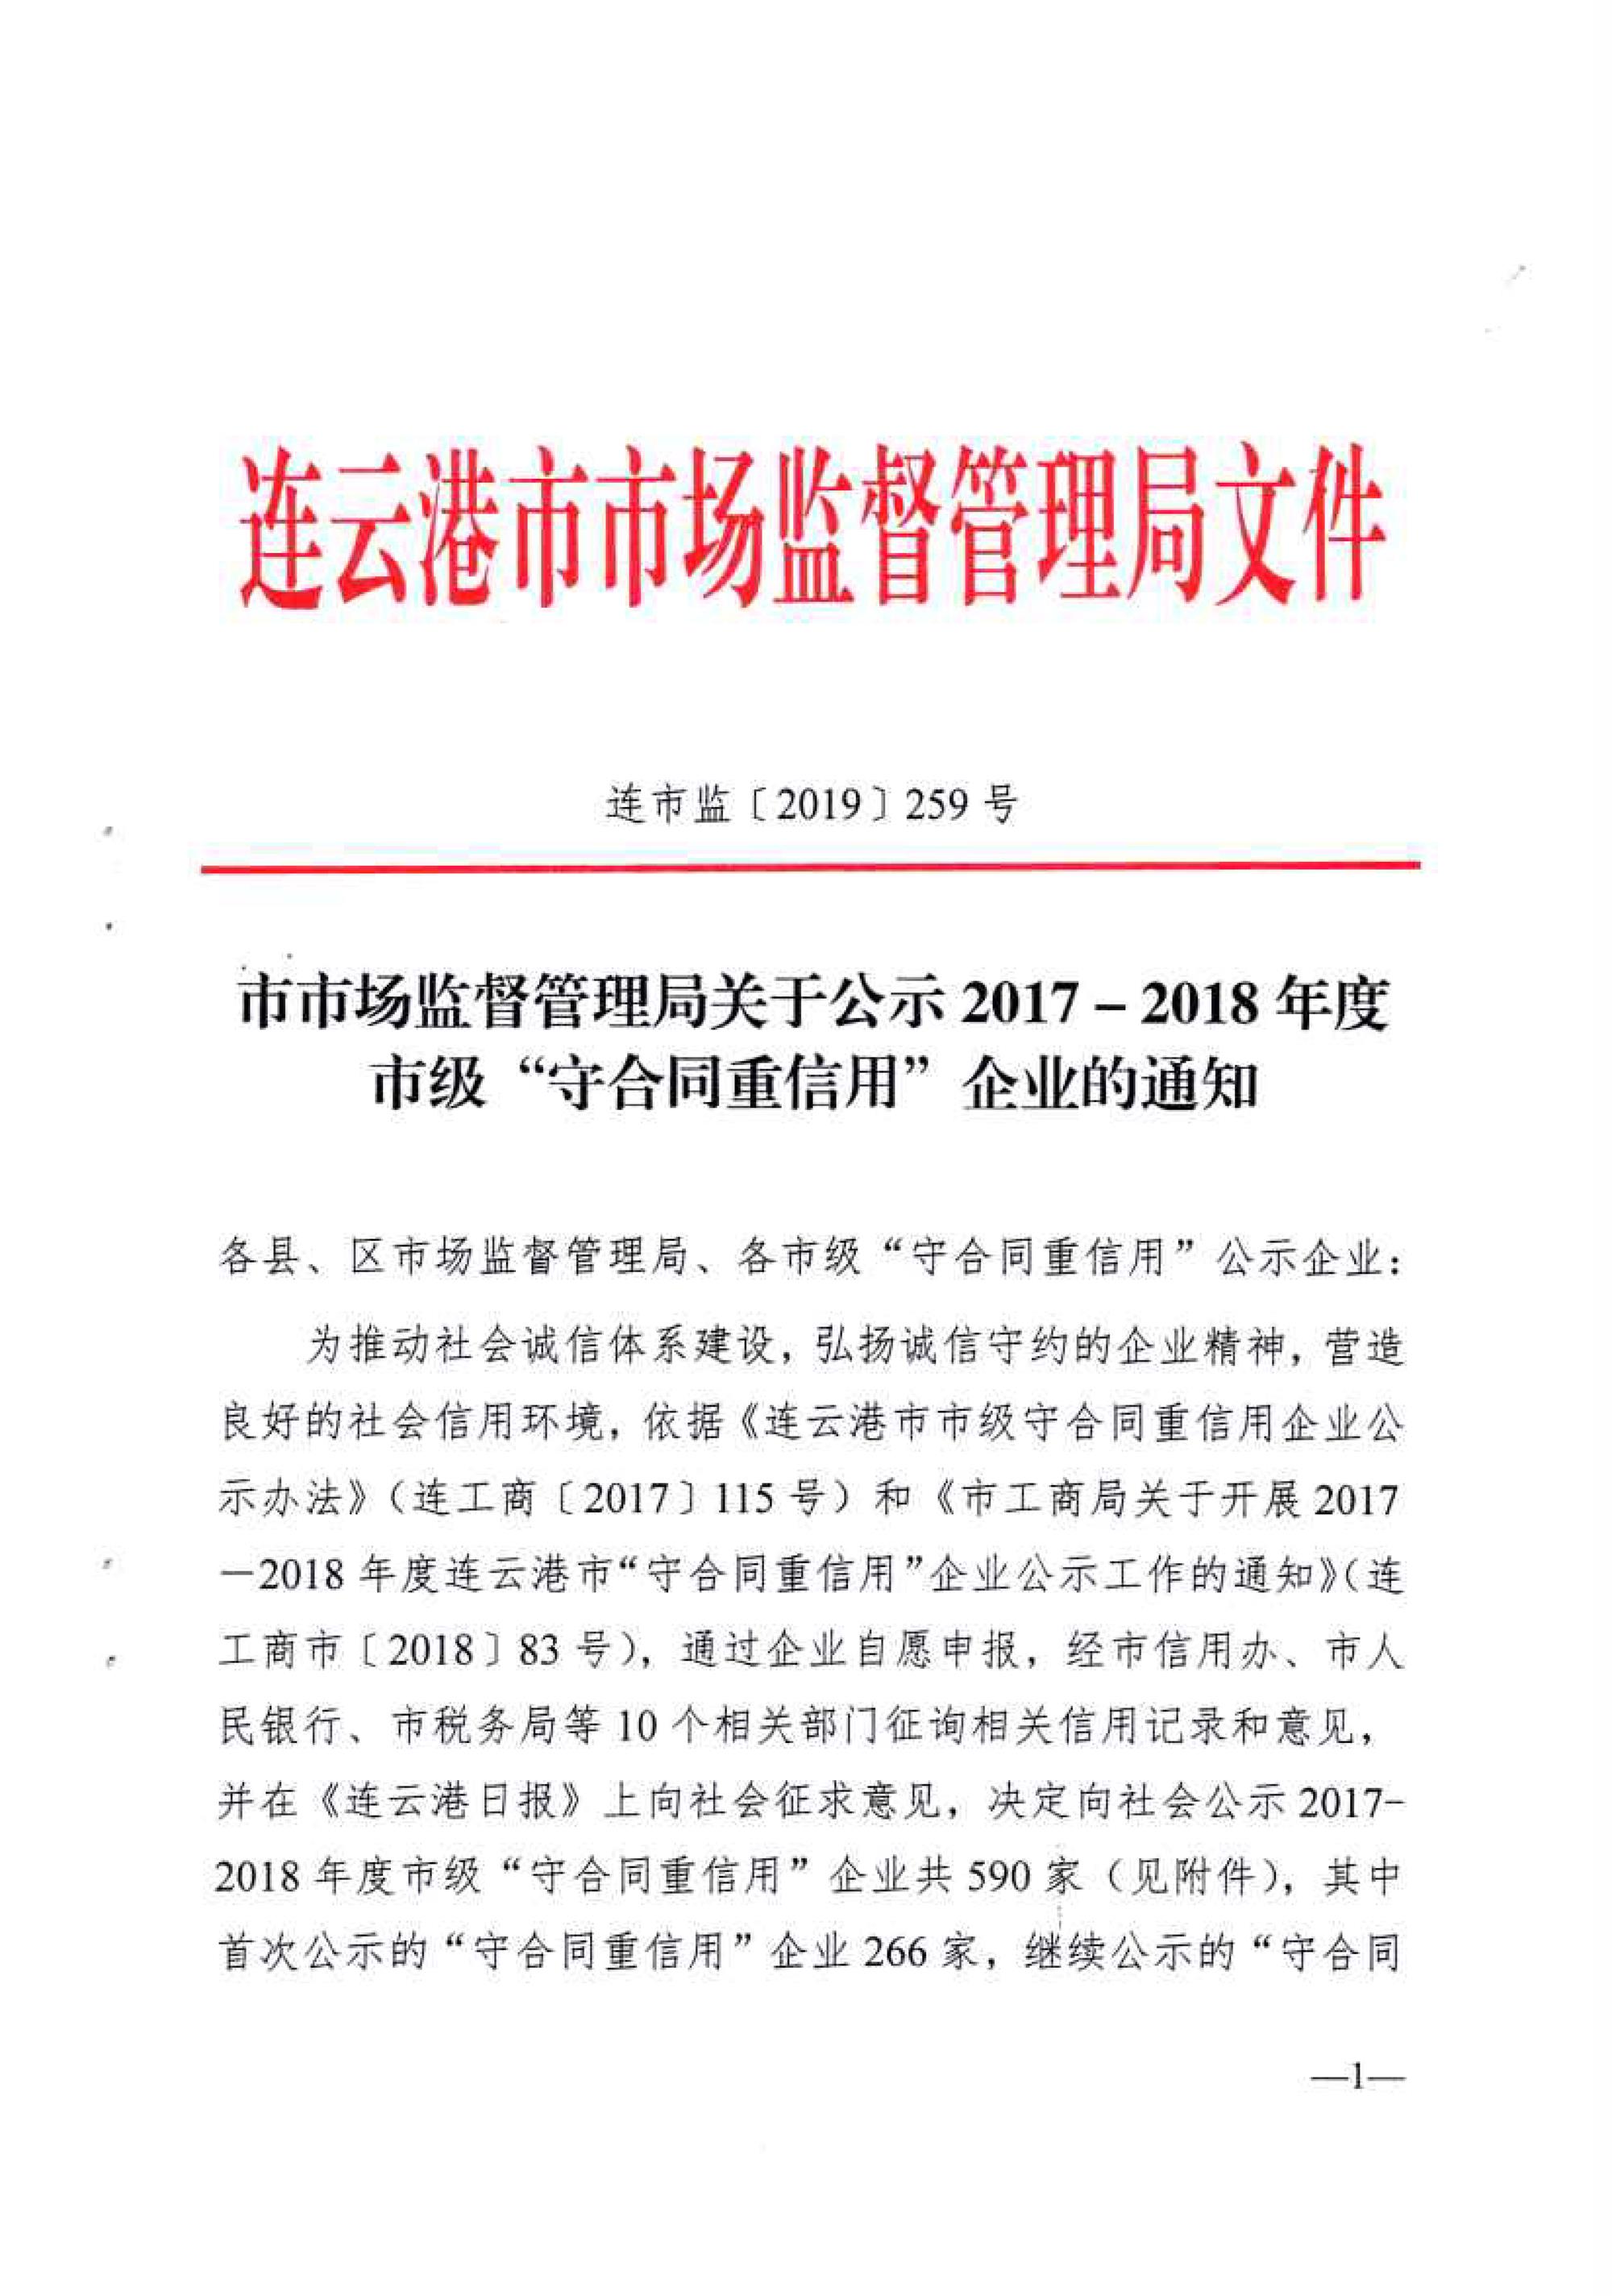 恭祝连云港青之峰荣获2017-2018年度市级“守合同重信用”企业称号